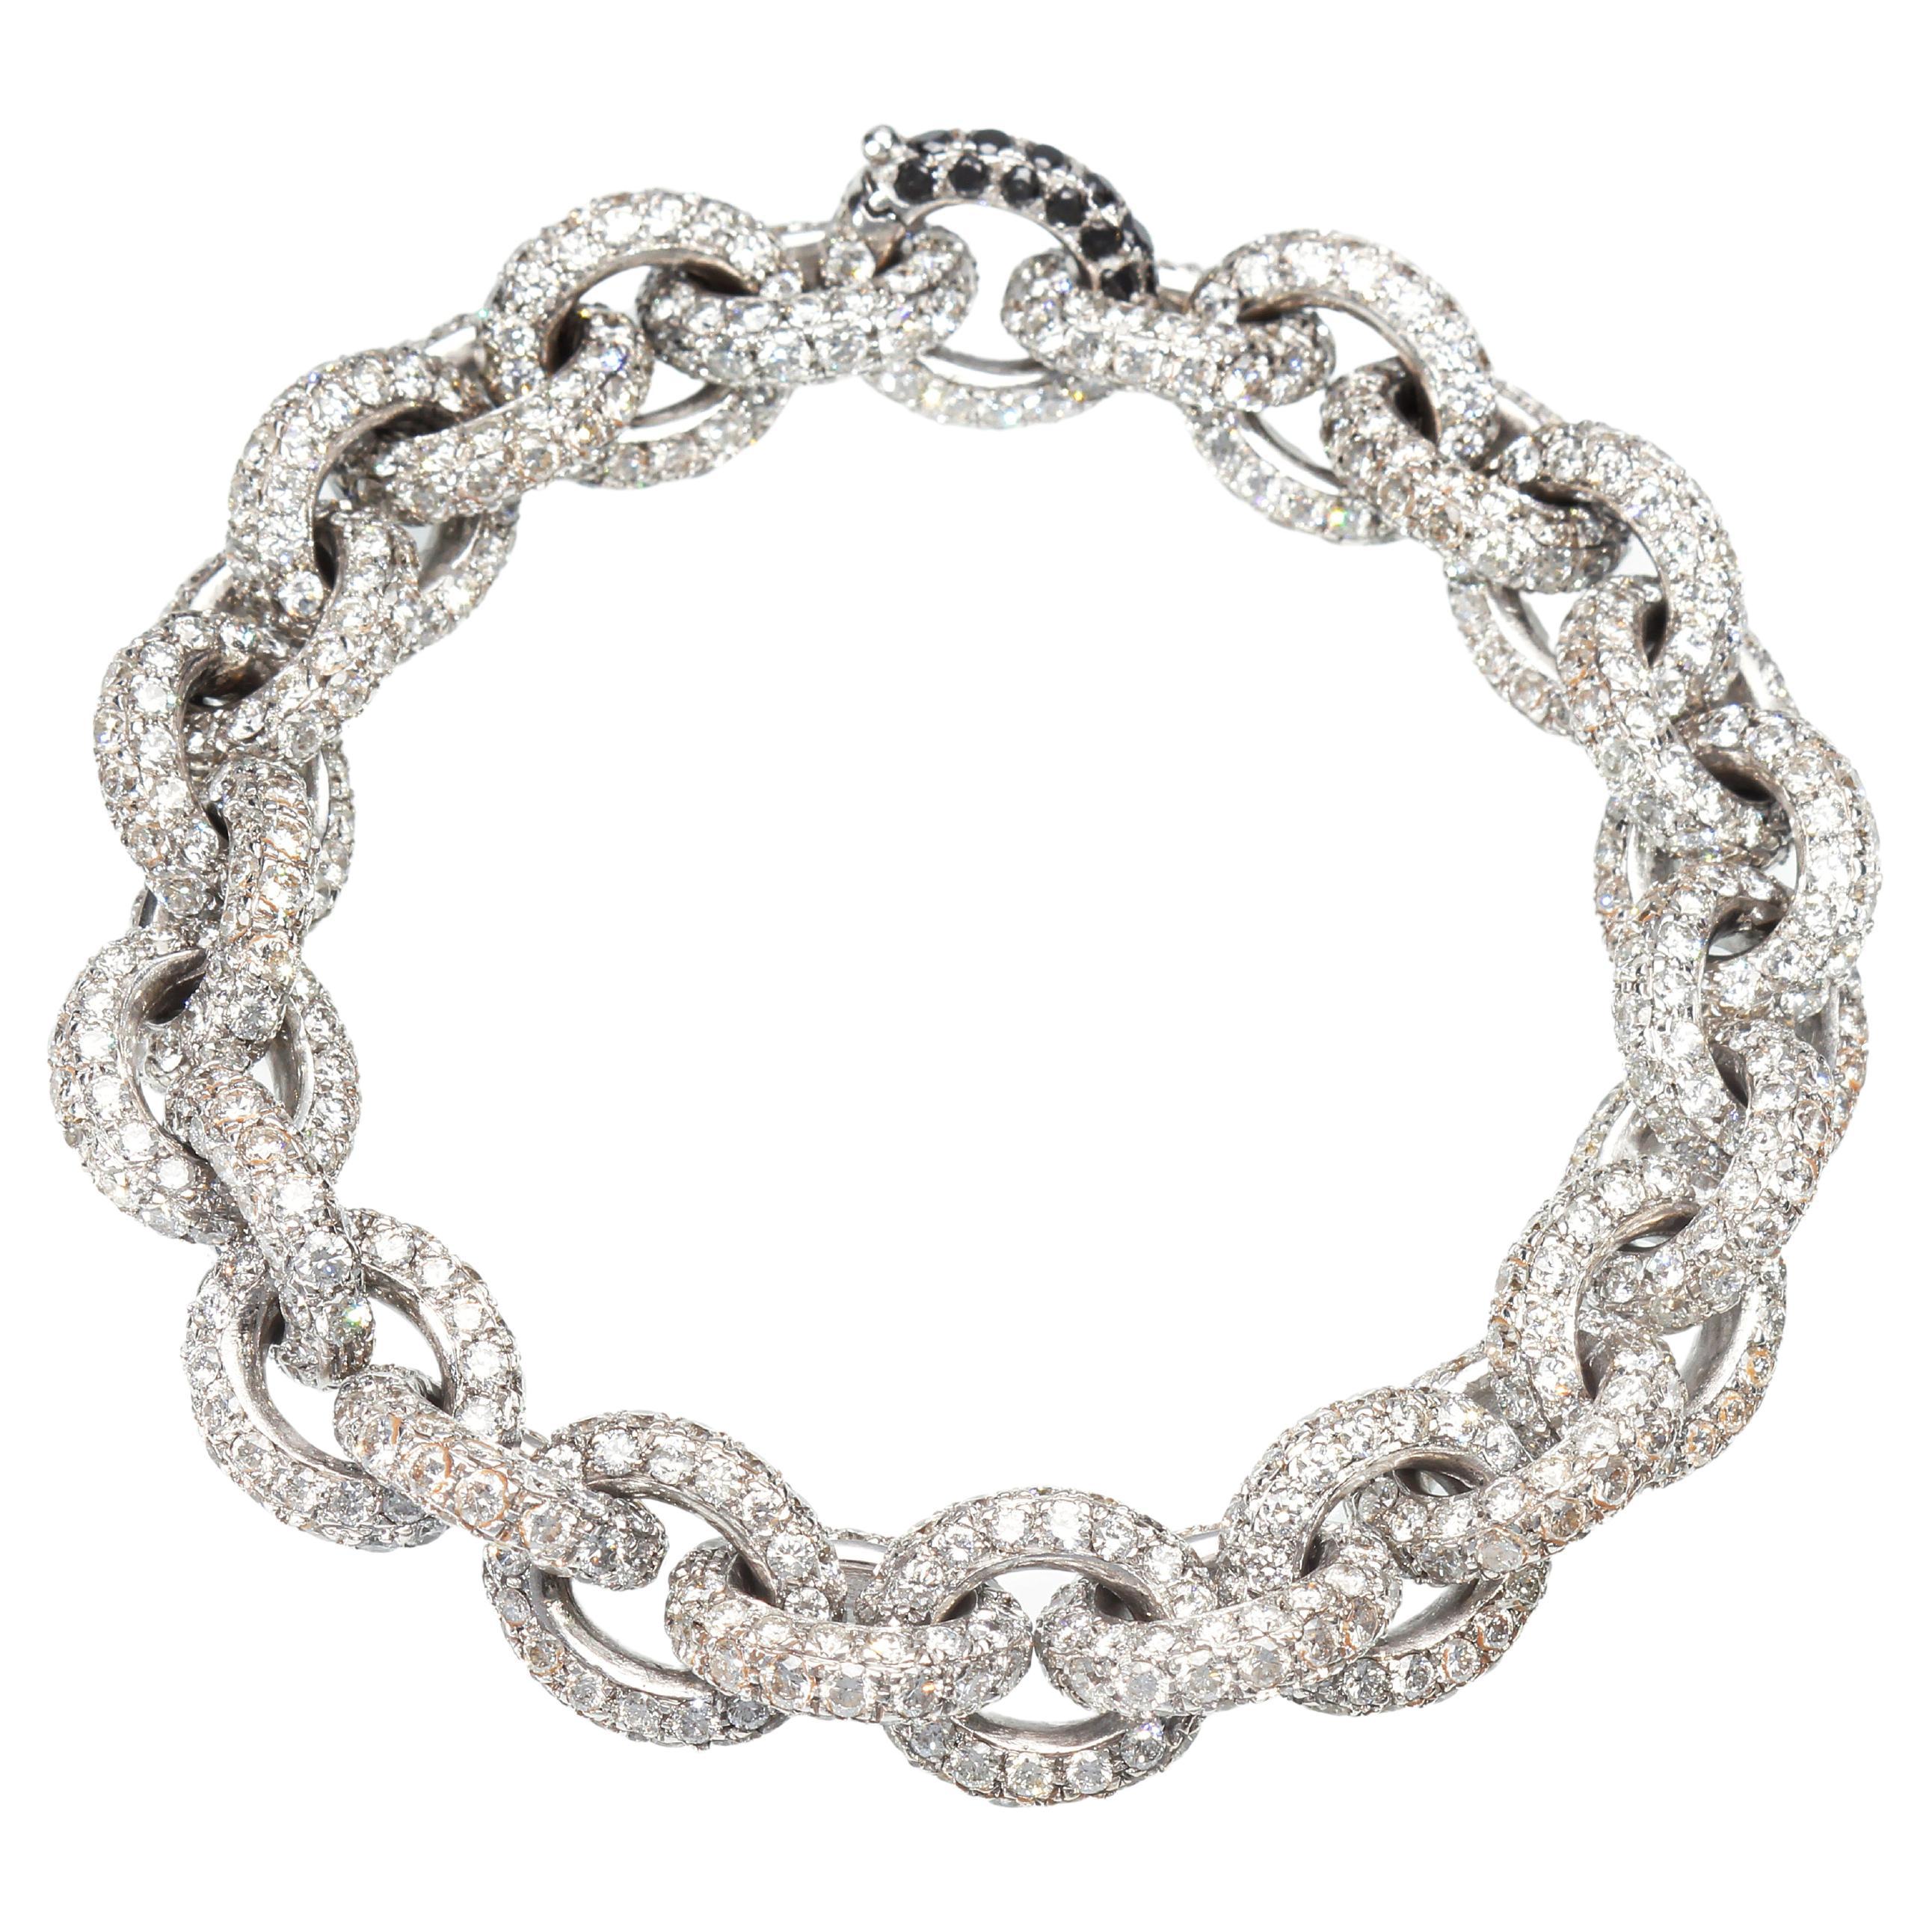 Kettenarmband mit 30,76 Karat weißen Diamanten. Handgefertigt. Hergestellt in Italien